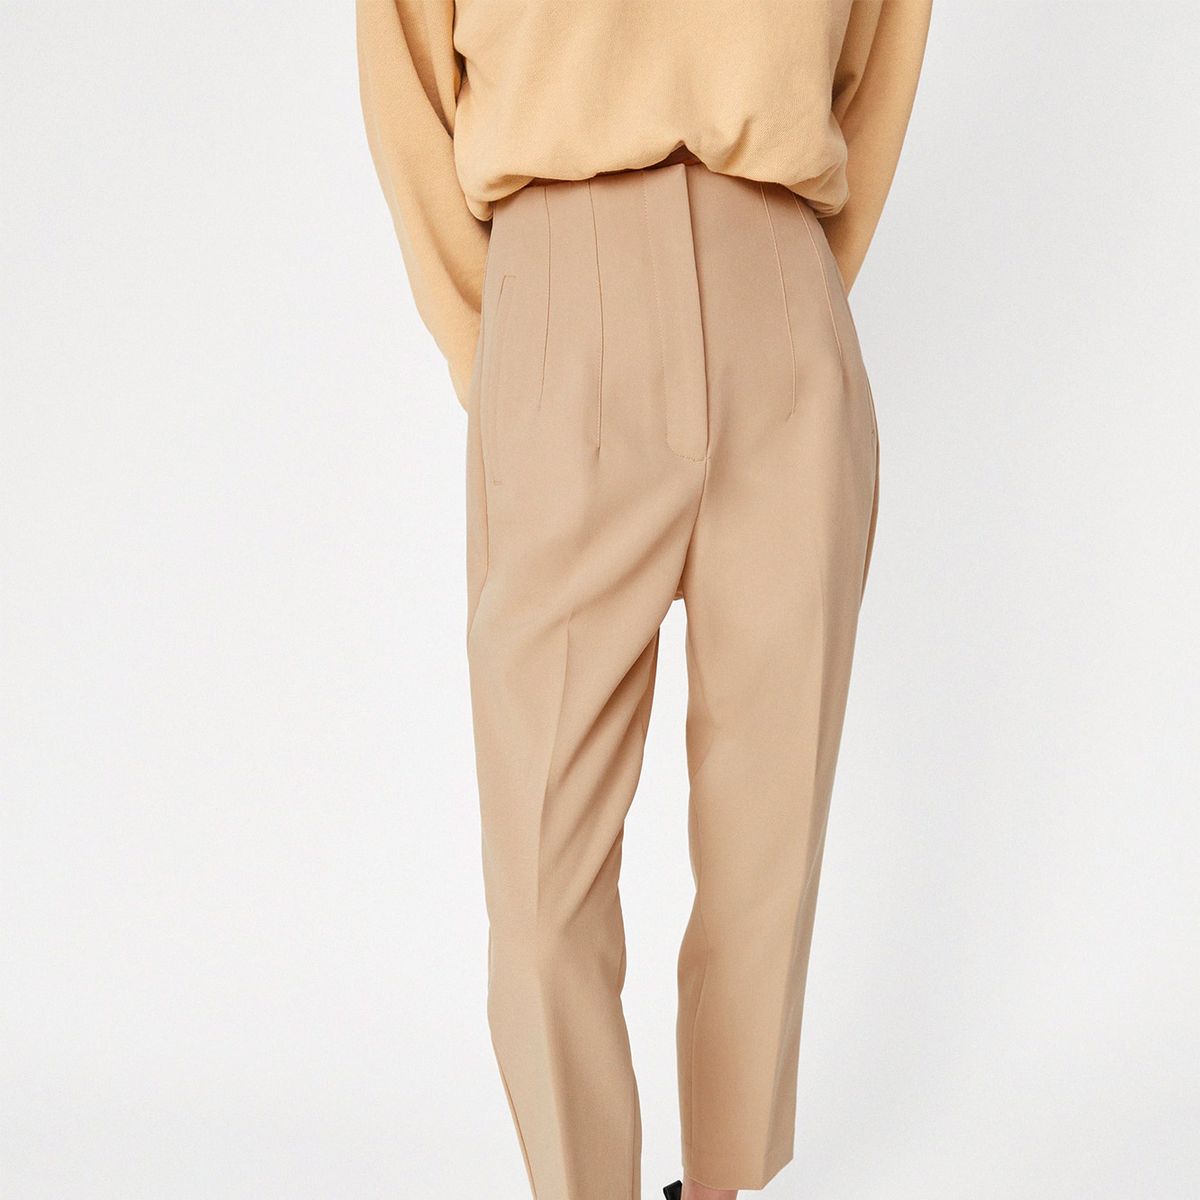 S t Kilómetros Minimizar Estos pantalones de Zara son ideales para mujeres de talla grande